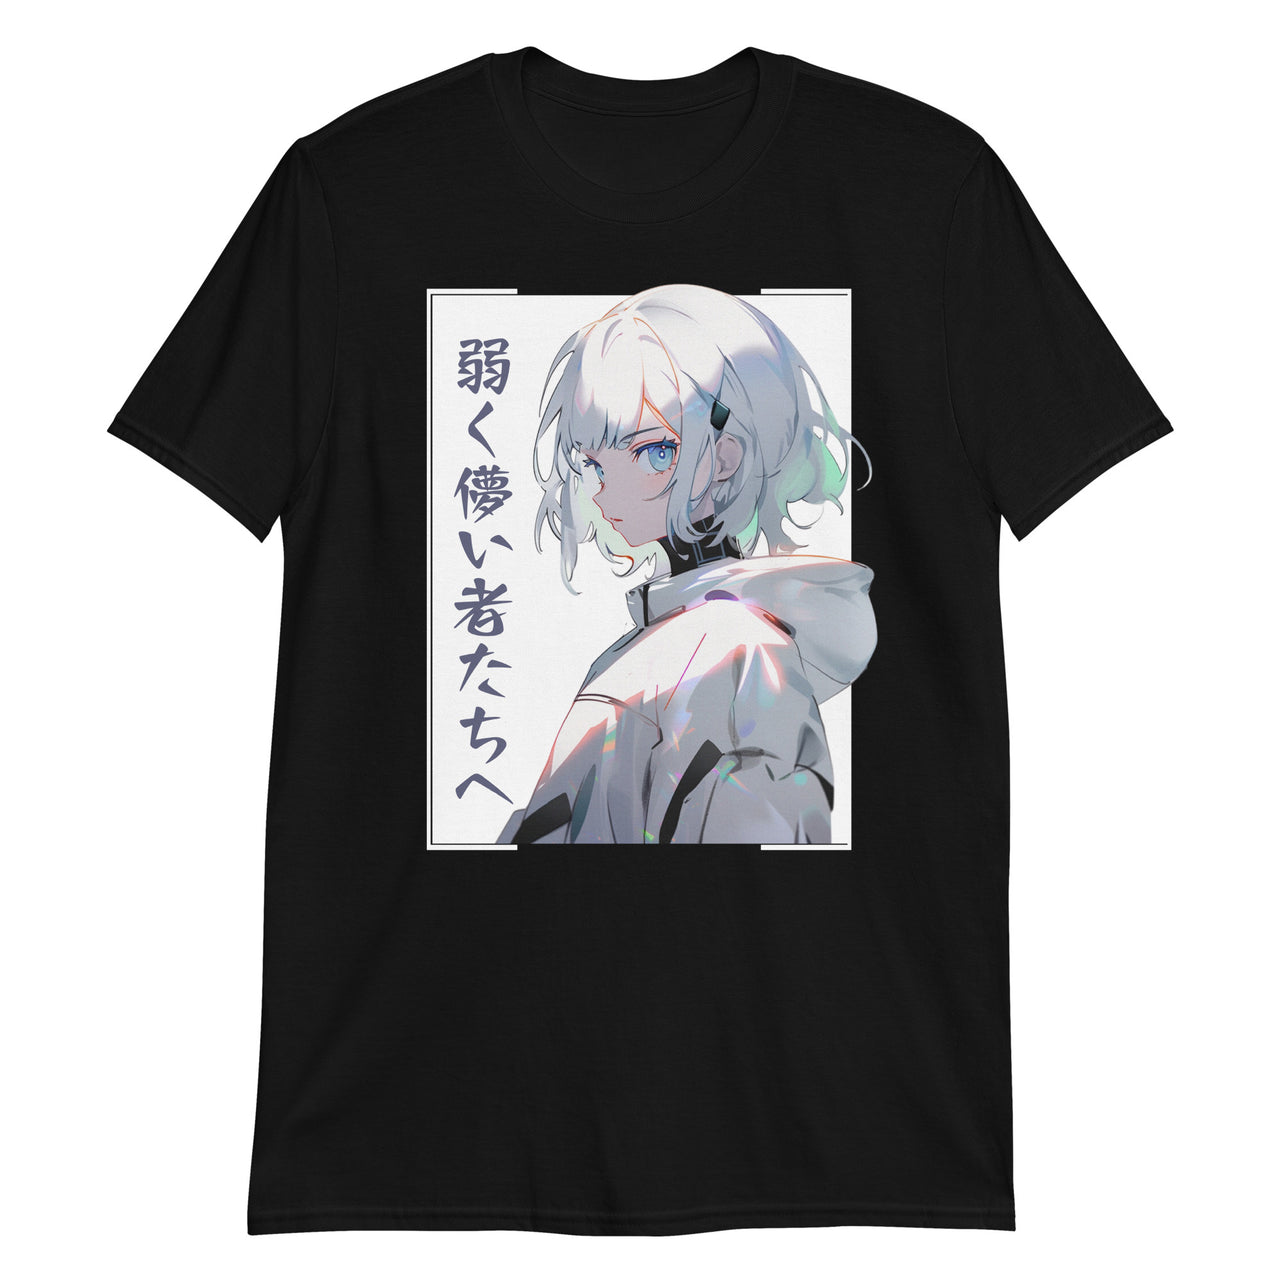 Strength in Weakness Japanese Anime Girl T-Shirt